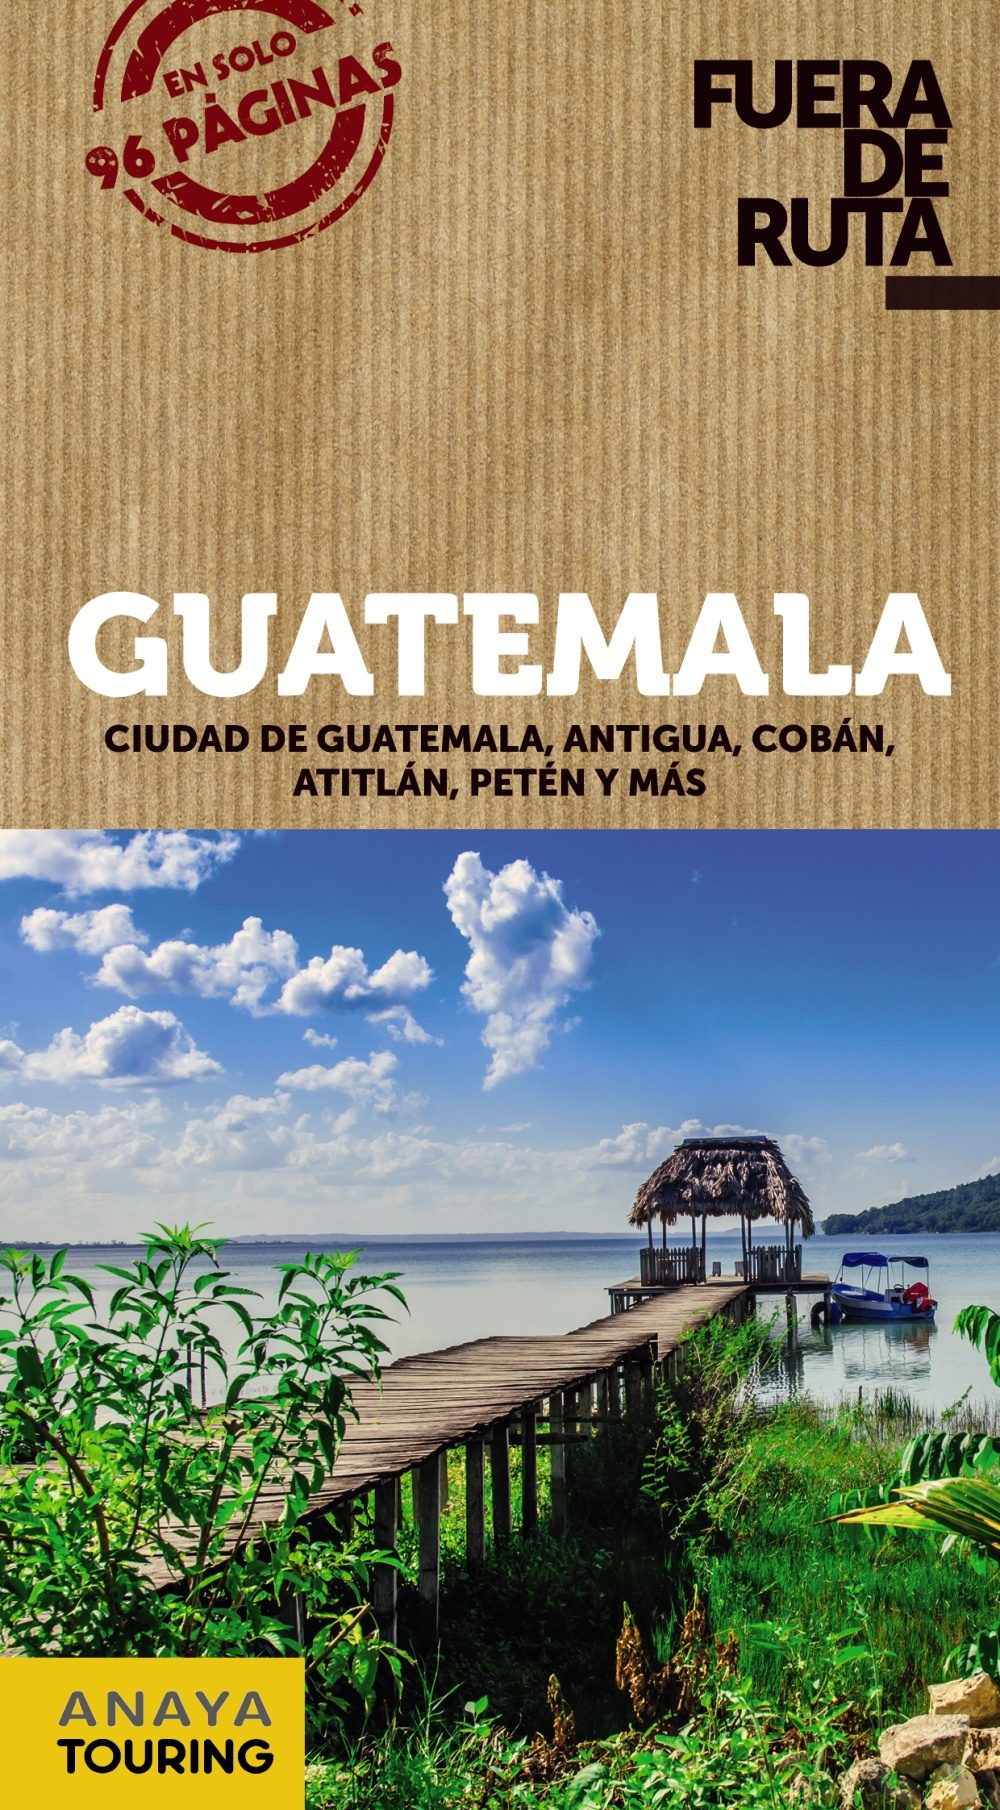 Guatemala (Fuera de ruta). Ciudad de Guatemala, Antigua, Cobán, Atitlán, Petén y más